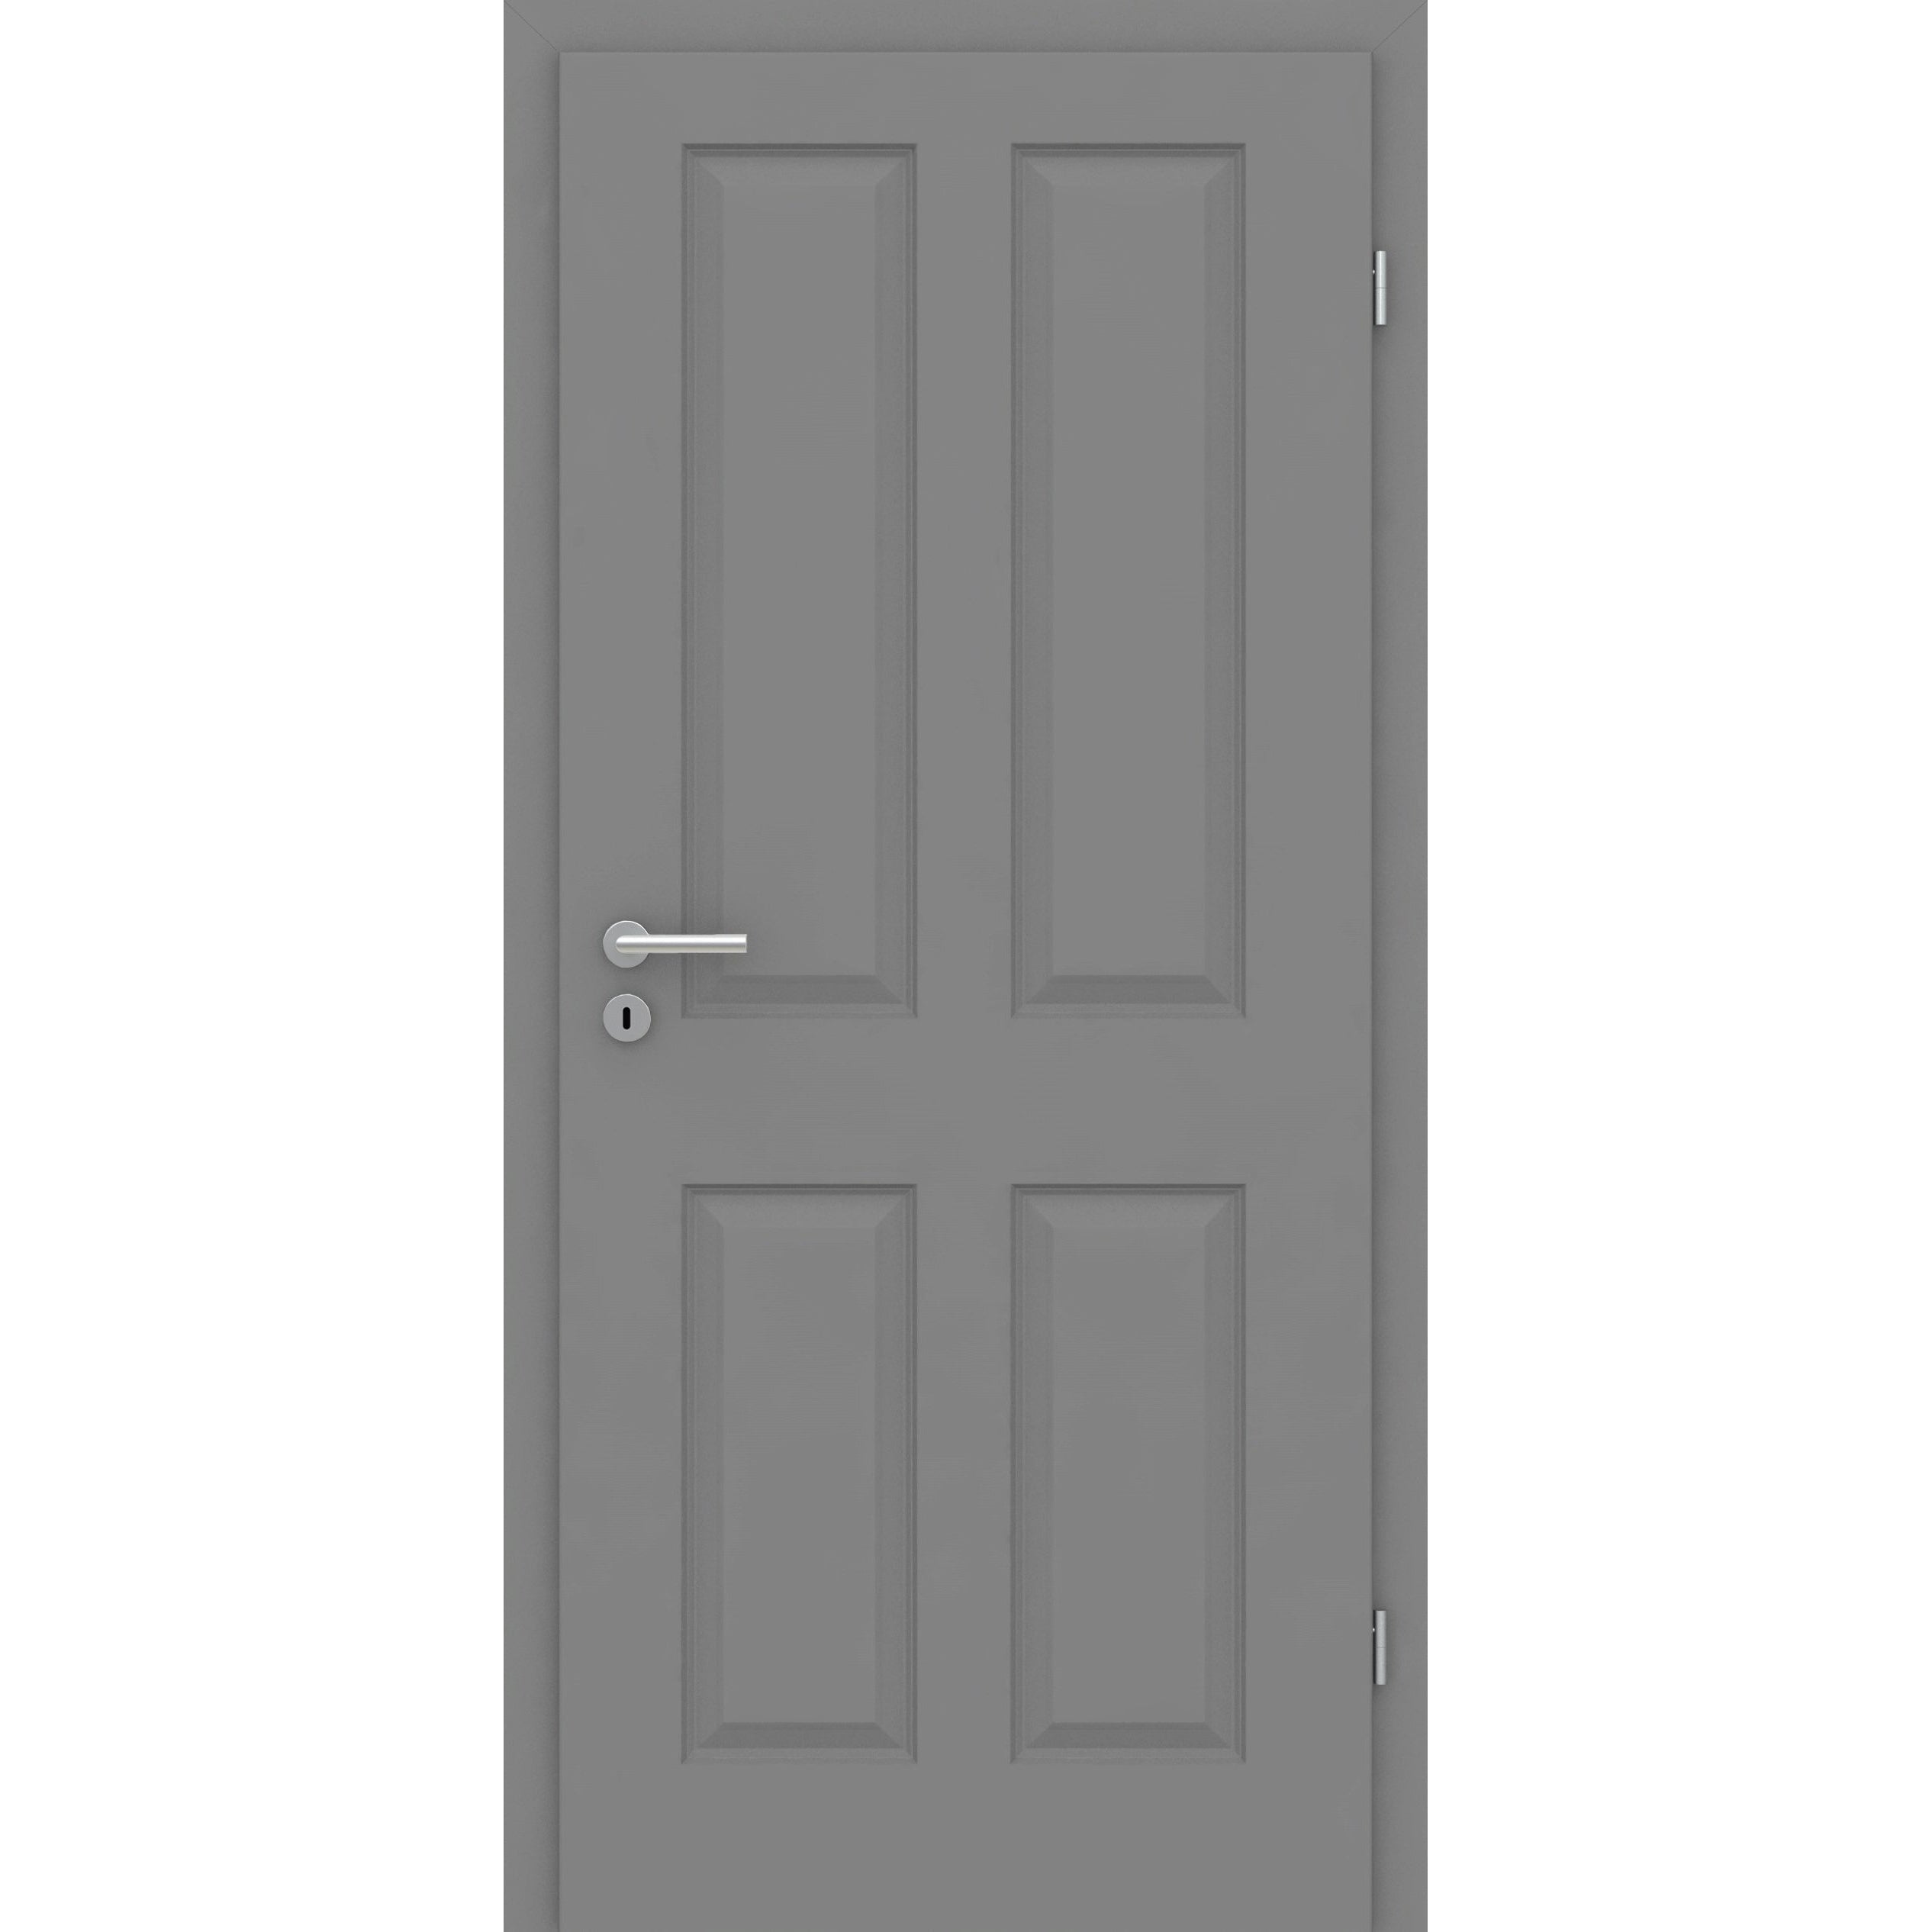 Wohnungseingangstür mit Zarge grau 4 Kassetten Designkante SK1 / KK3 - Modell Stiltür K47